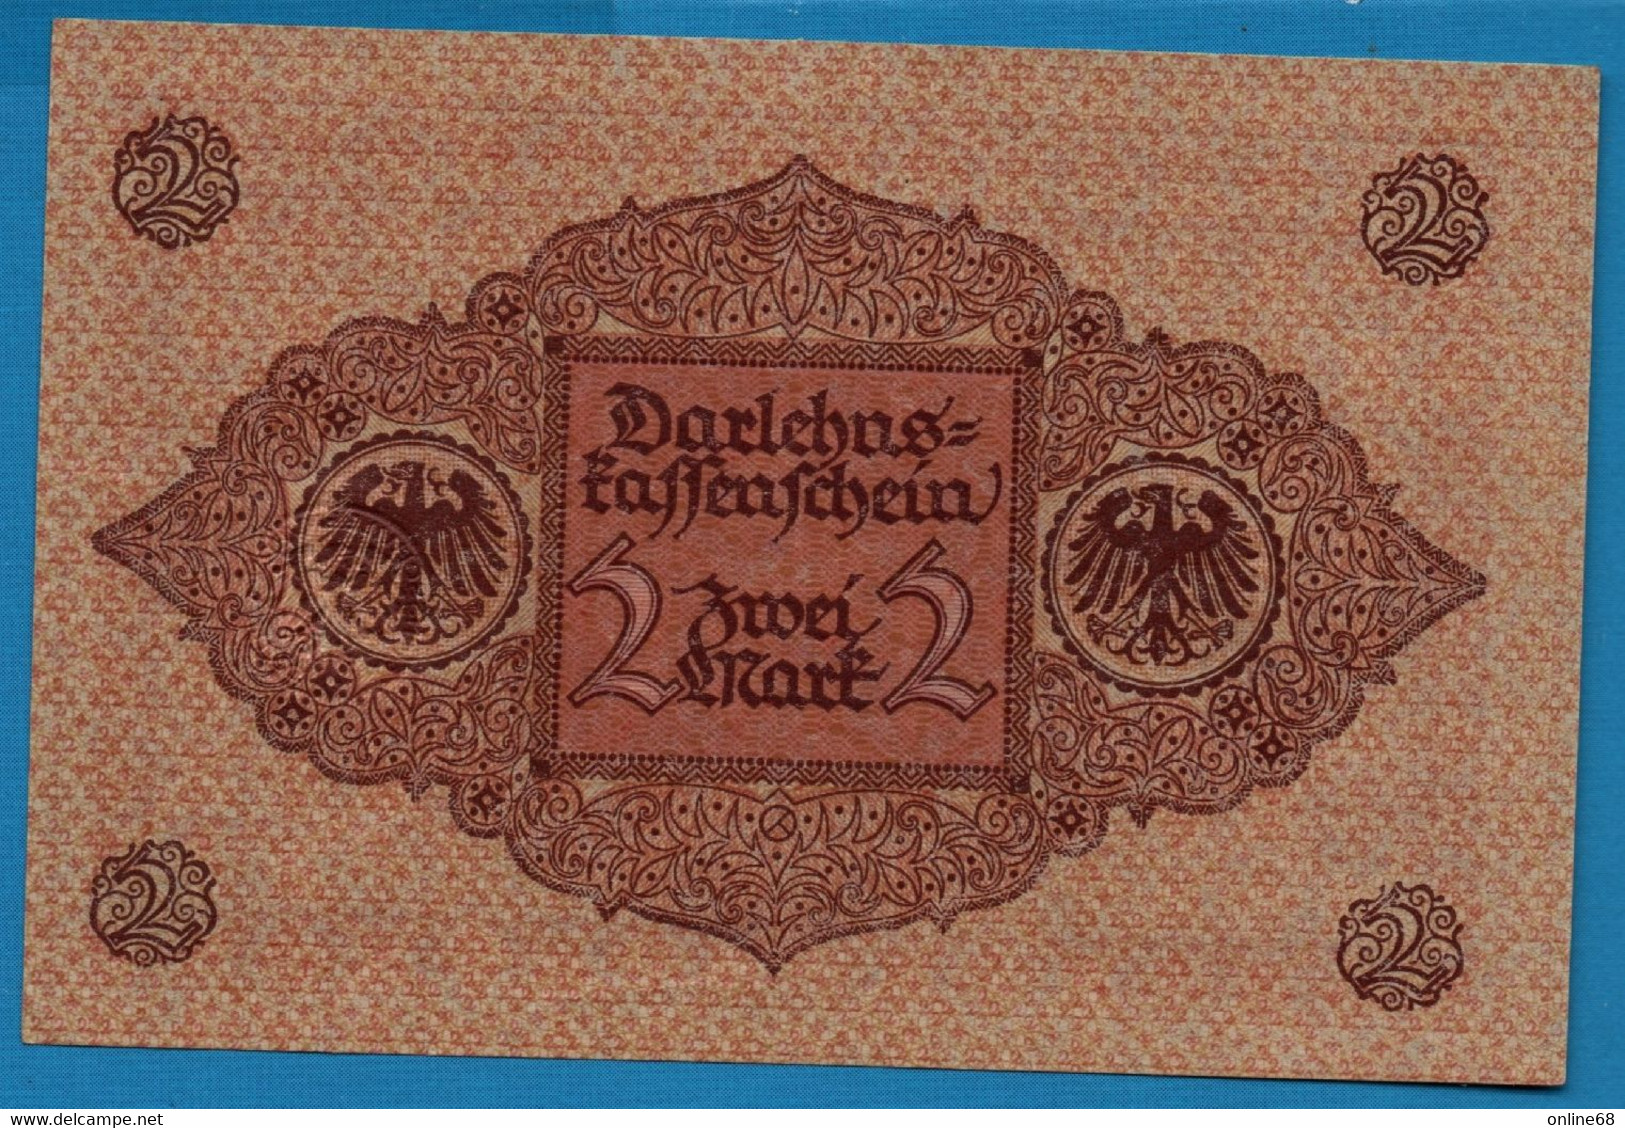 DEUTSCHES REICH 2 MARK 01.03.1920  # 9.951710 P# 59  DARLEHENSKASSENSCHEIN - Reichsschuldenverwaltung